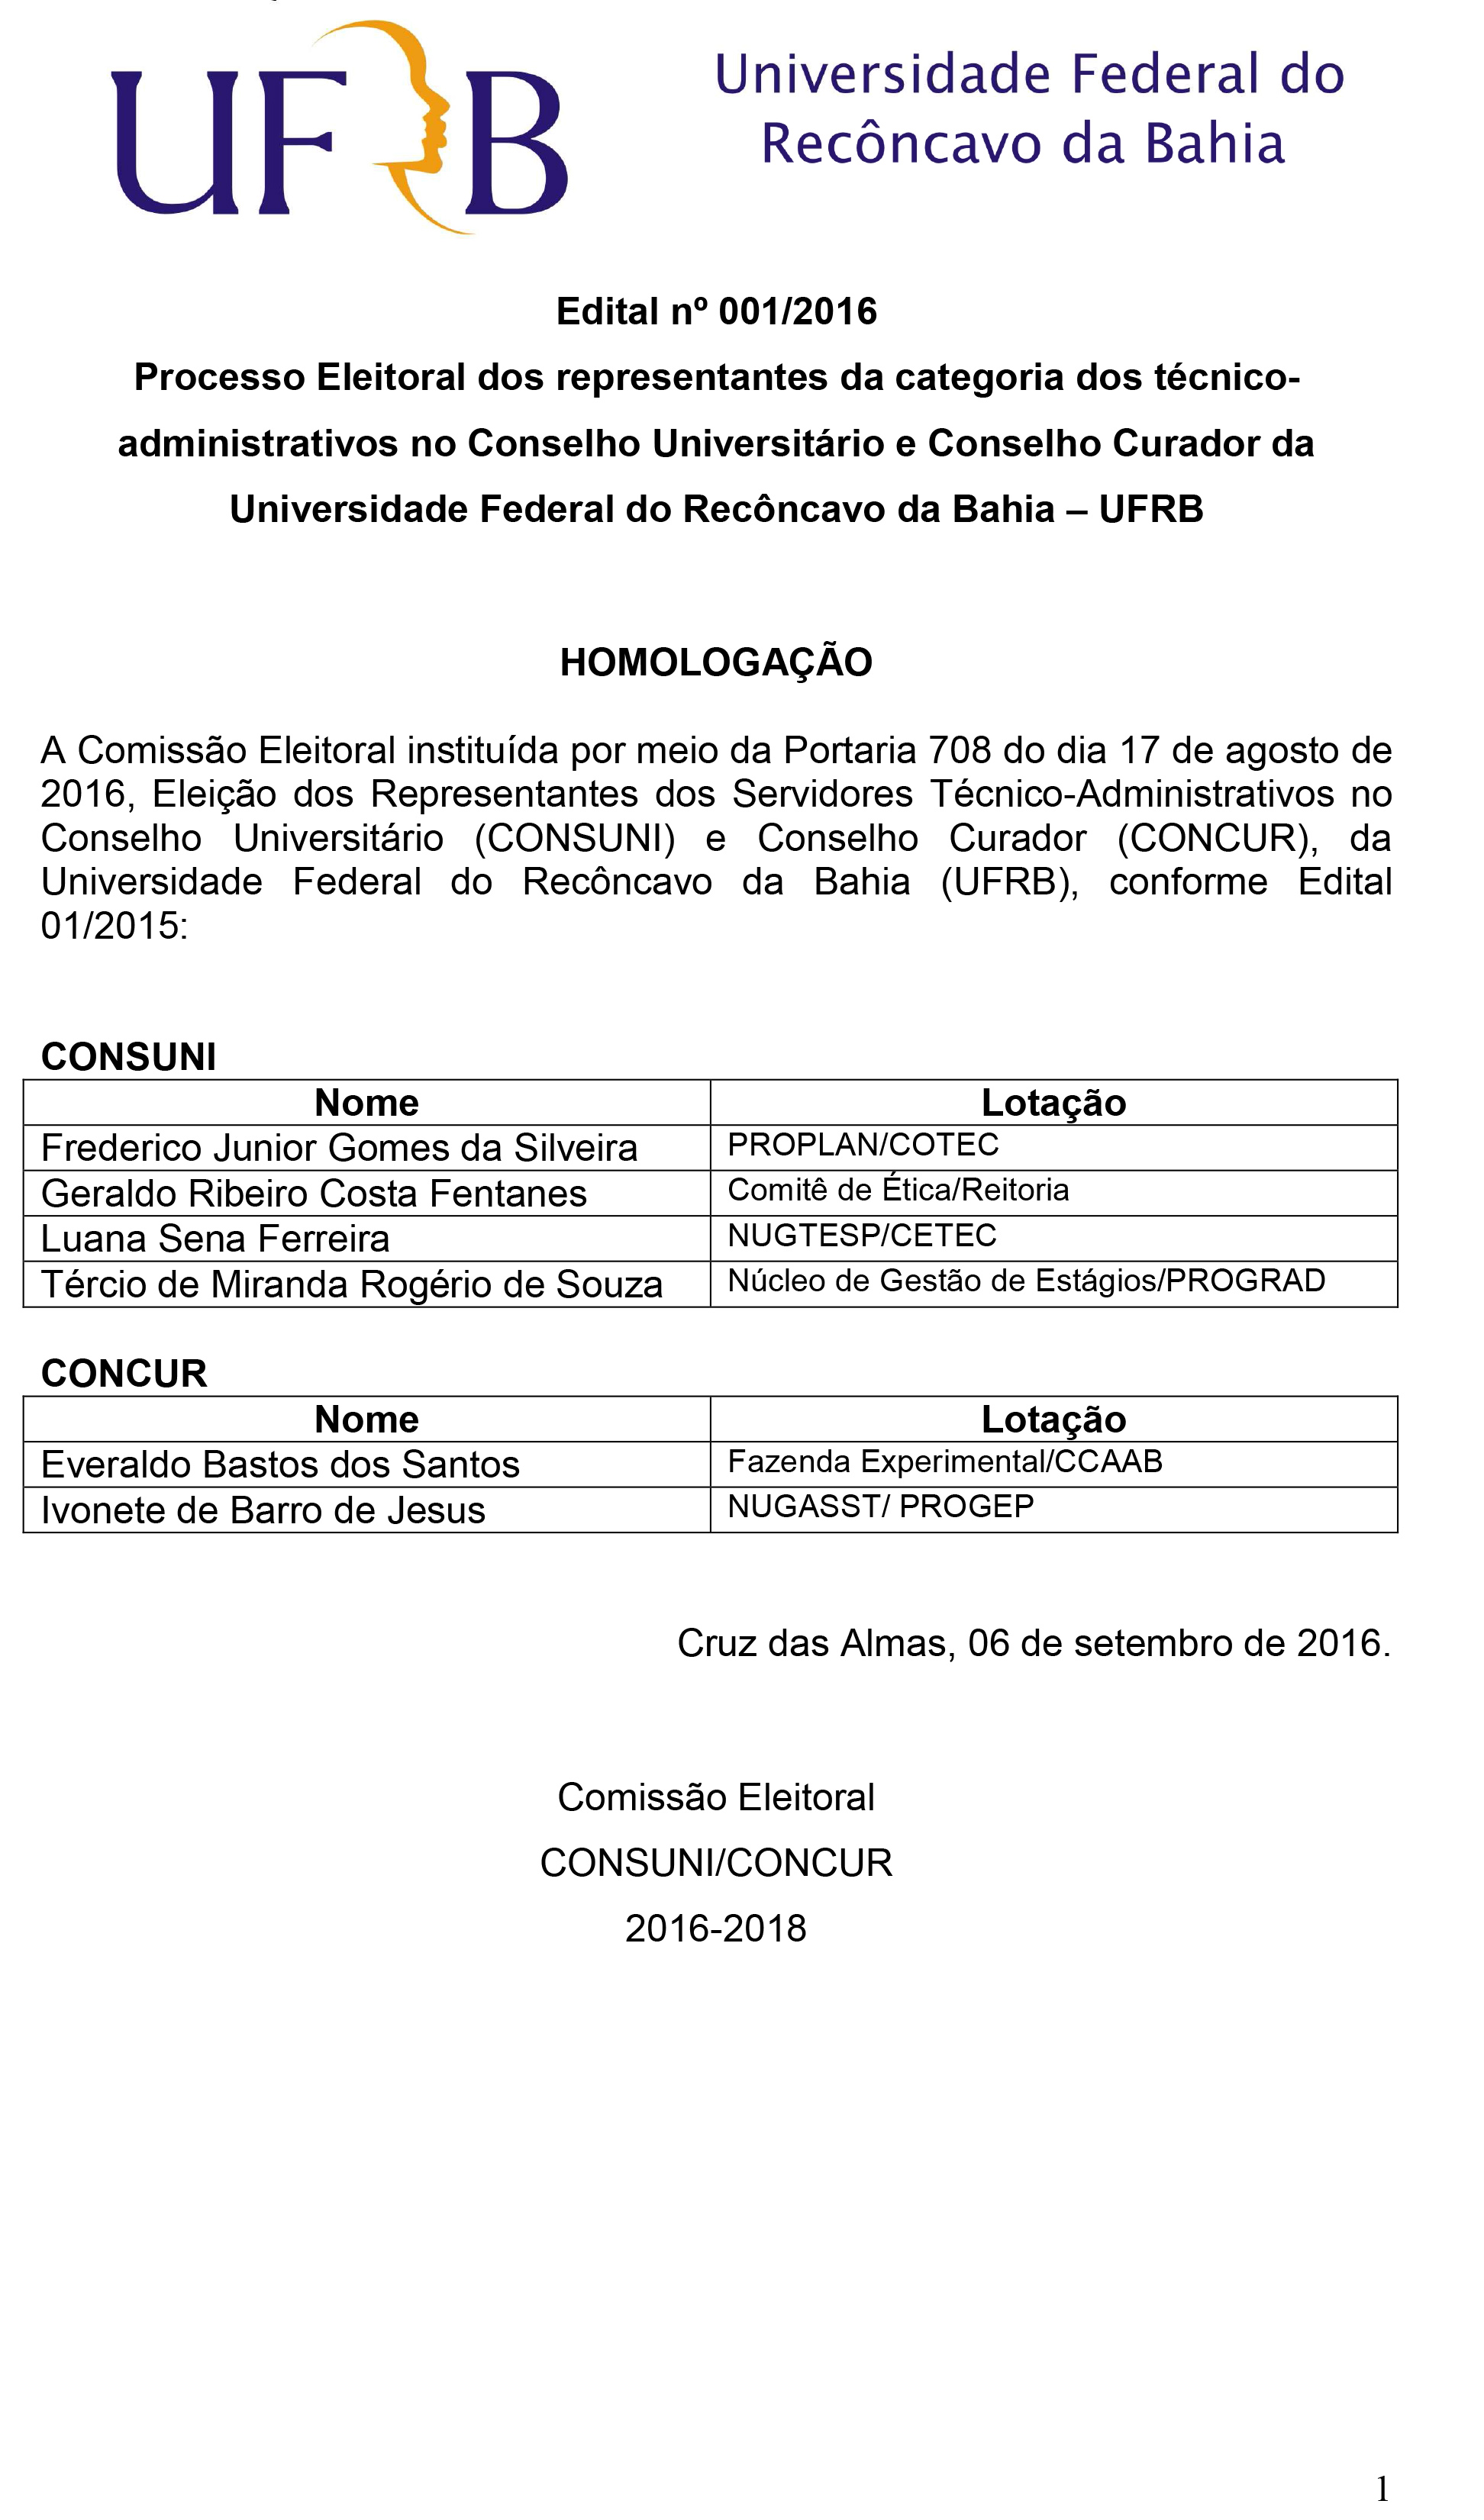 Homologação_inscrições_CONCUNI_CONCUR_UFRB_2016_2018